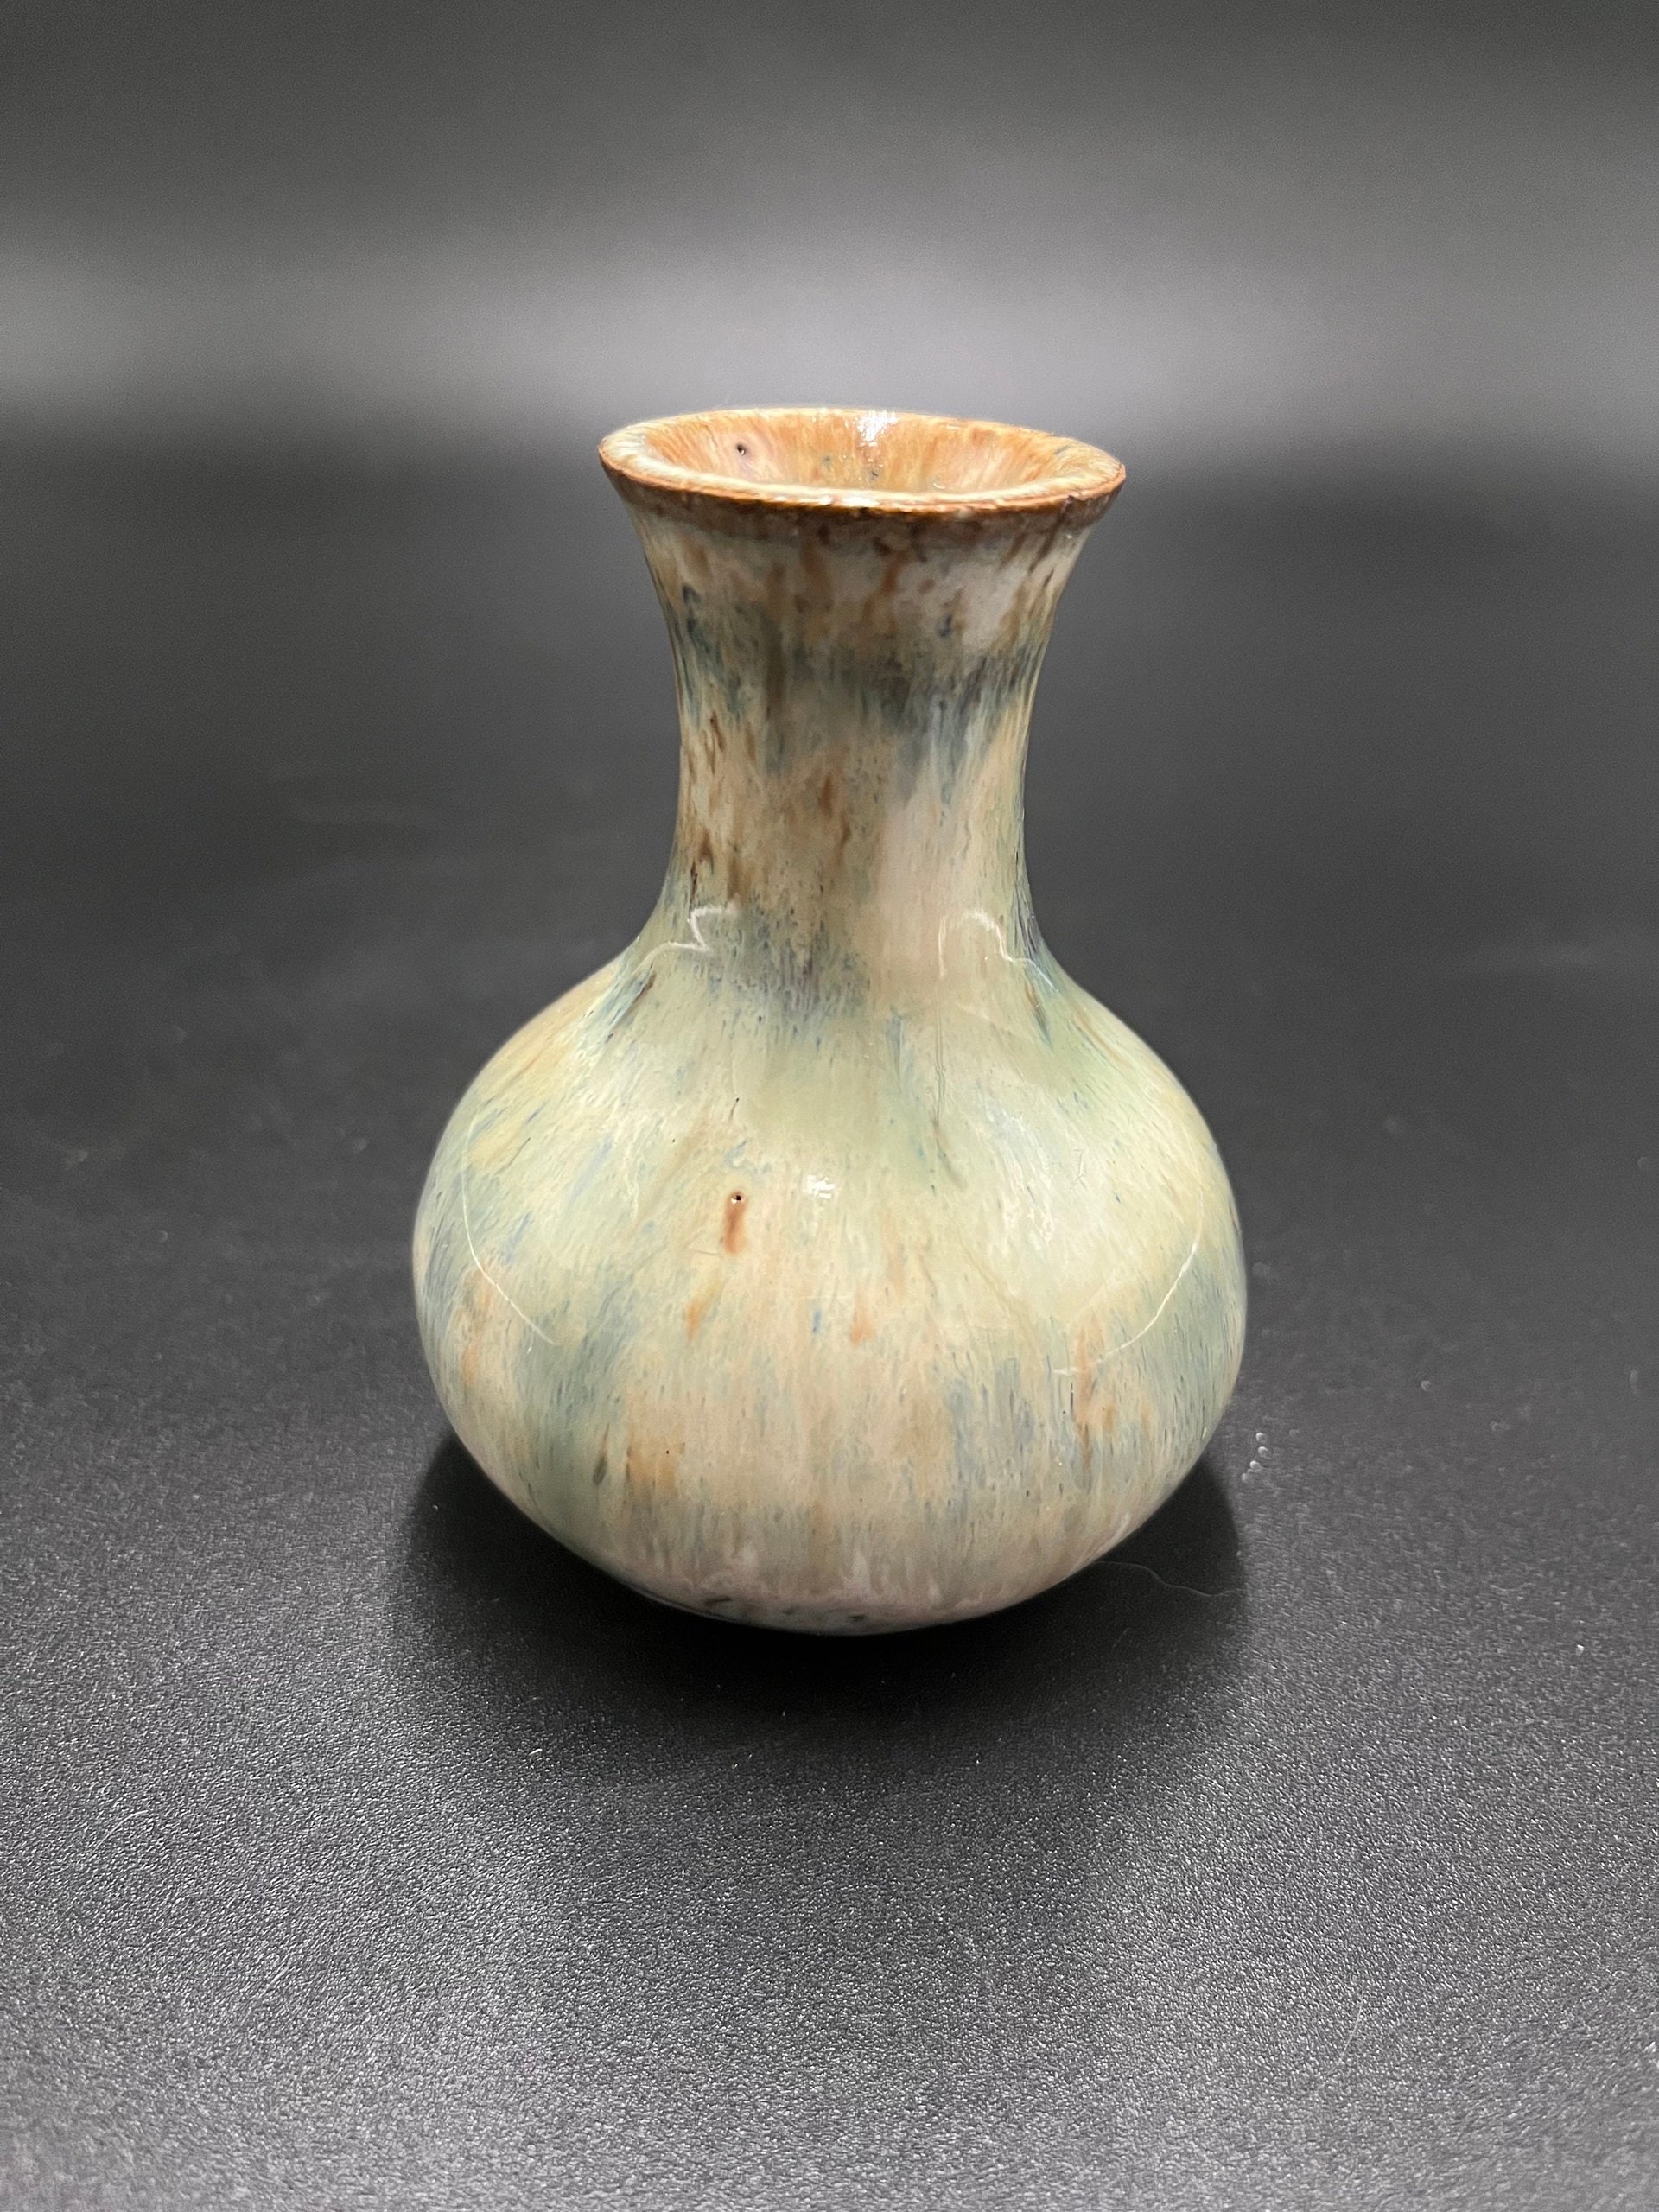 Handmade Green and Cream Ceramic Bud Vase